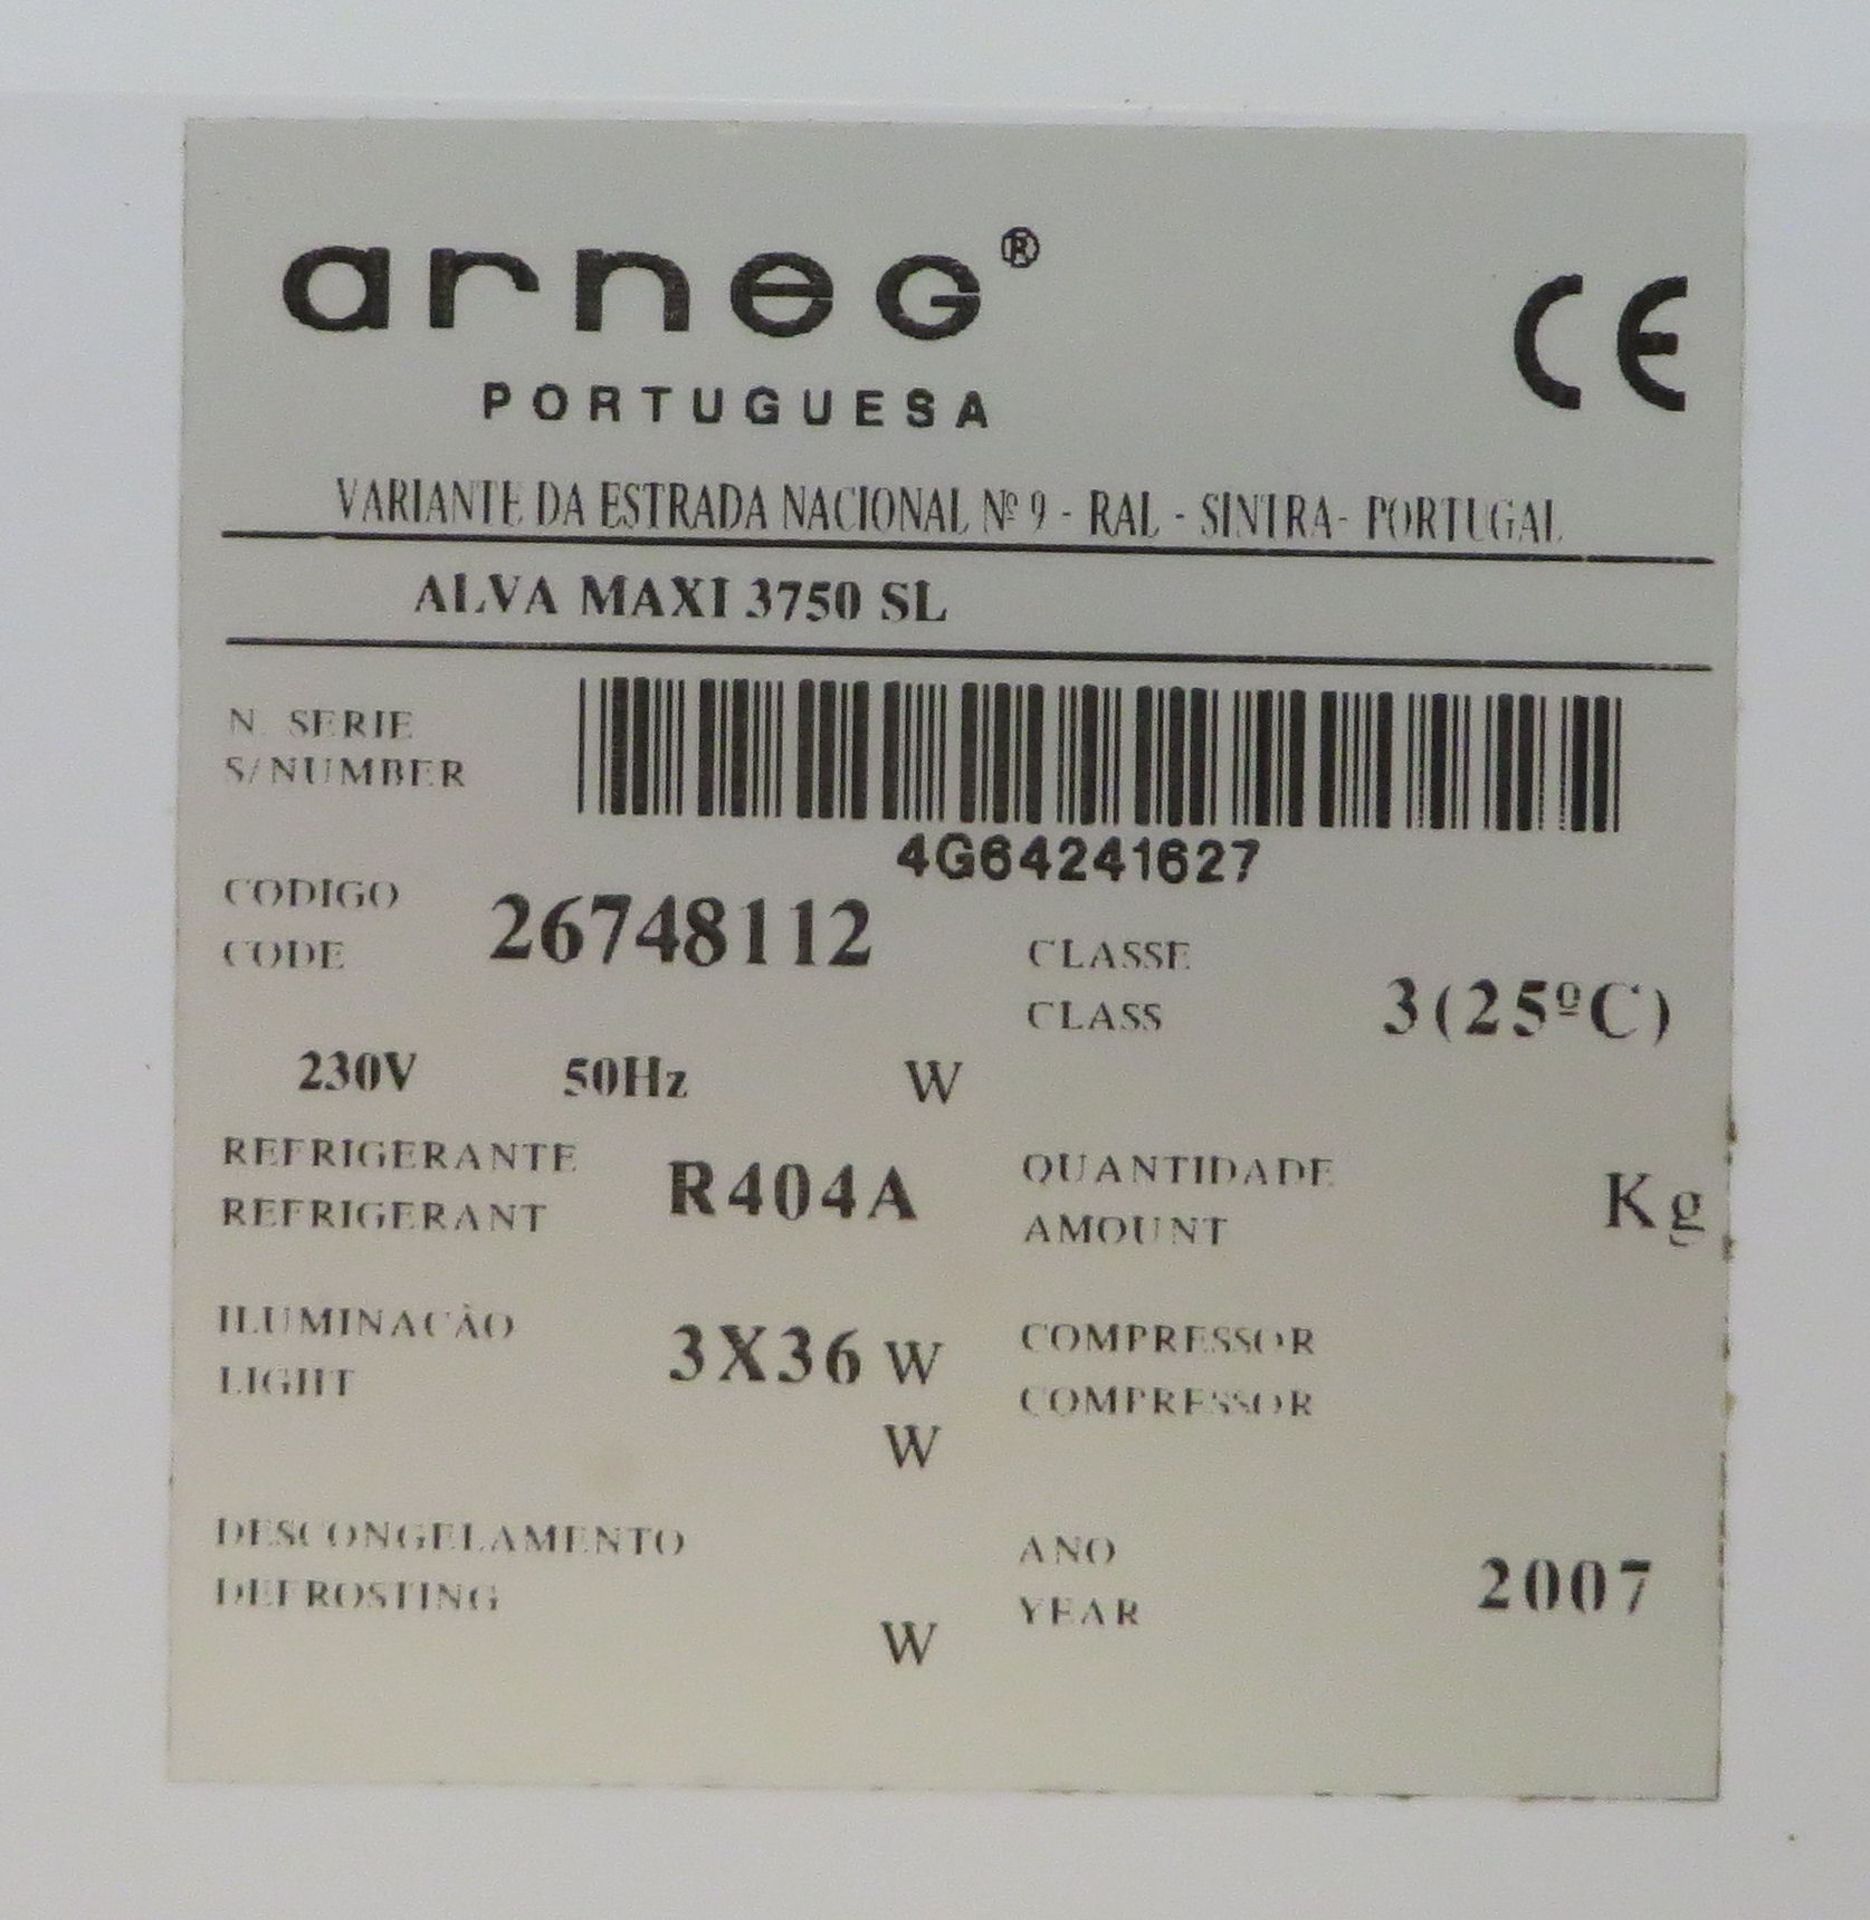 1 x Arneg Portuguesa Alva Maxi 3750SL Open Chiller - Ref: 01 - CL173 - Location: Altrincham WA15 - Image 5 of 6